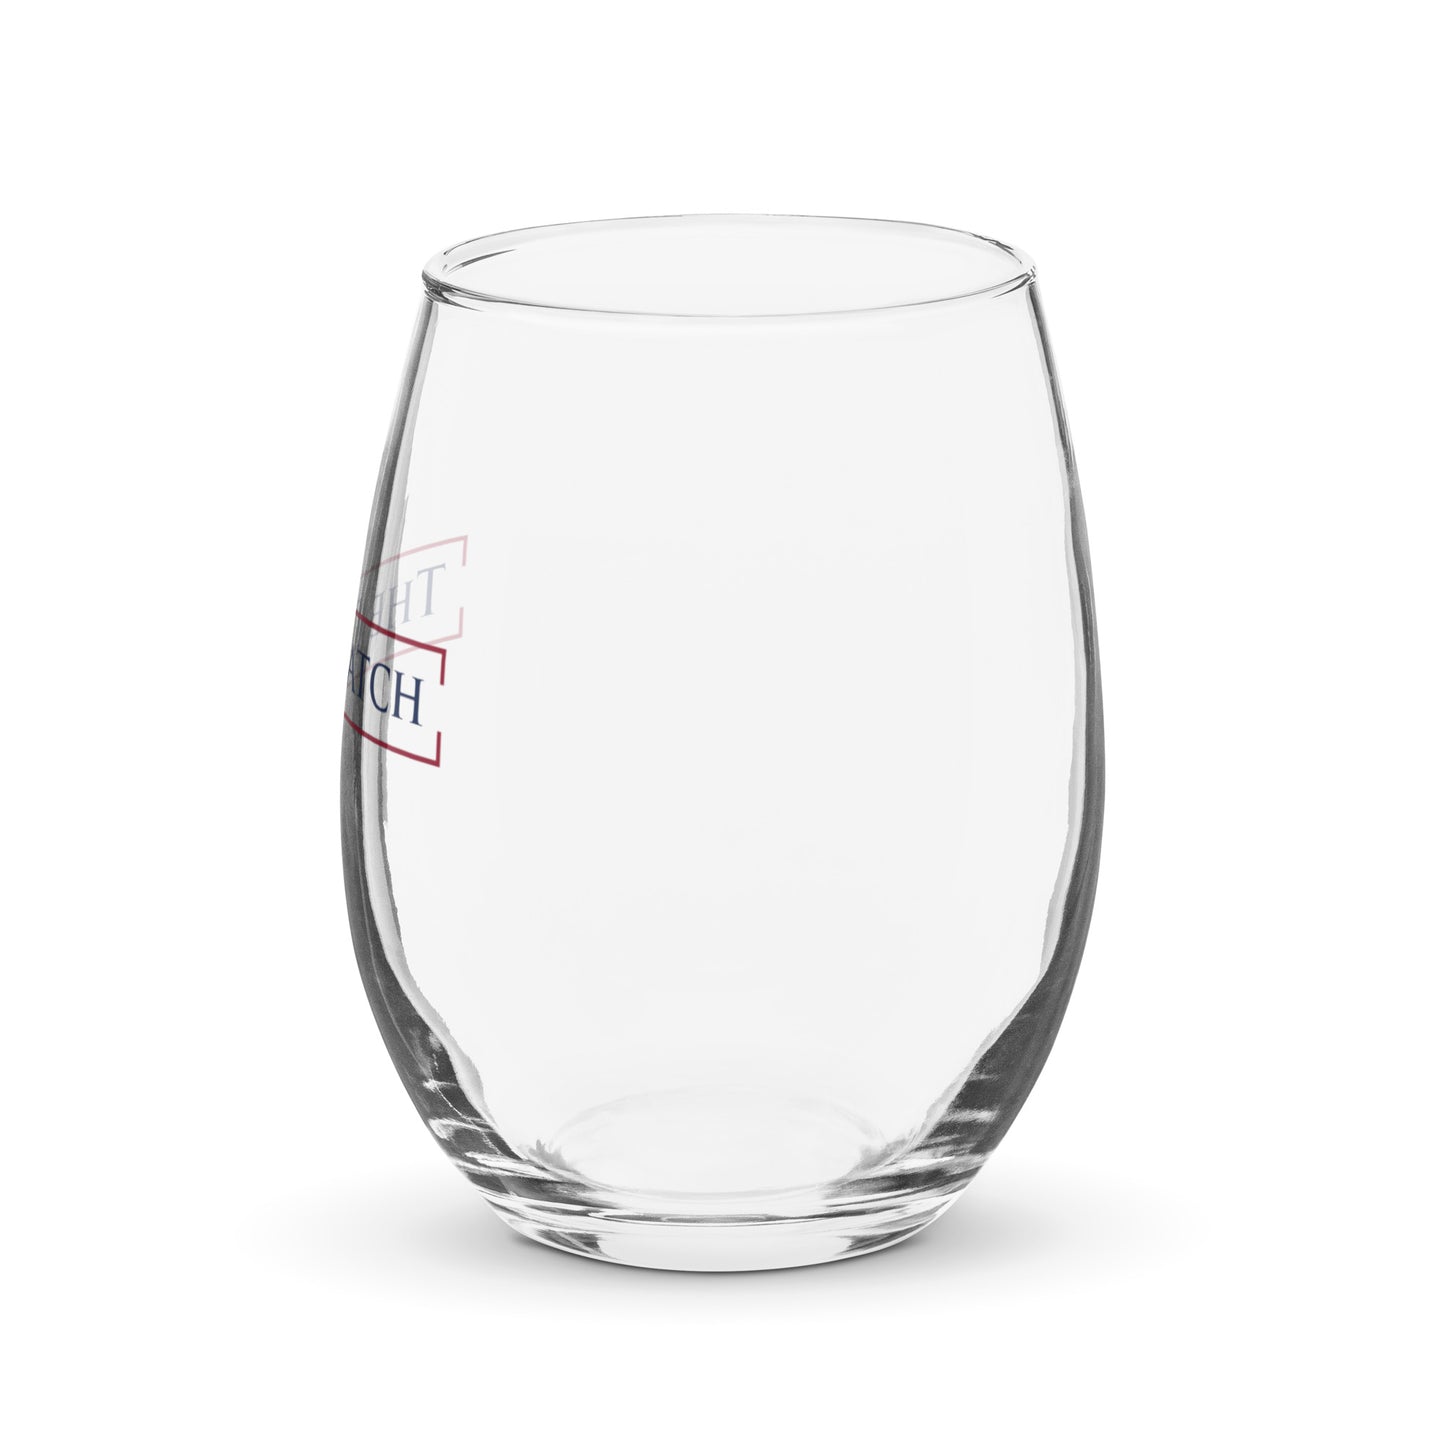 Dispatch Logo Stemless Wine Glass